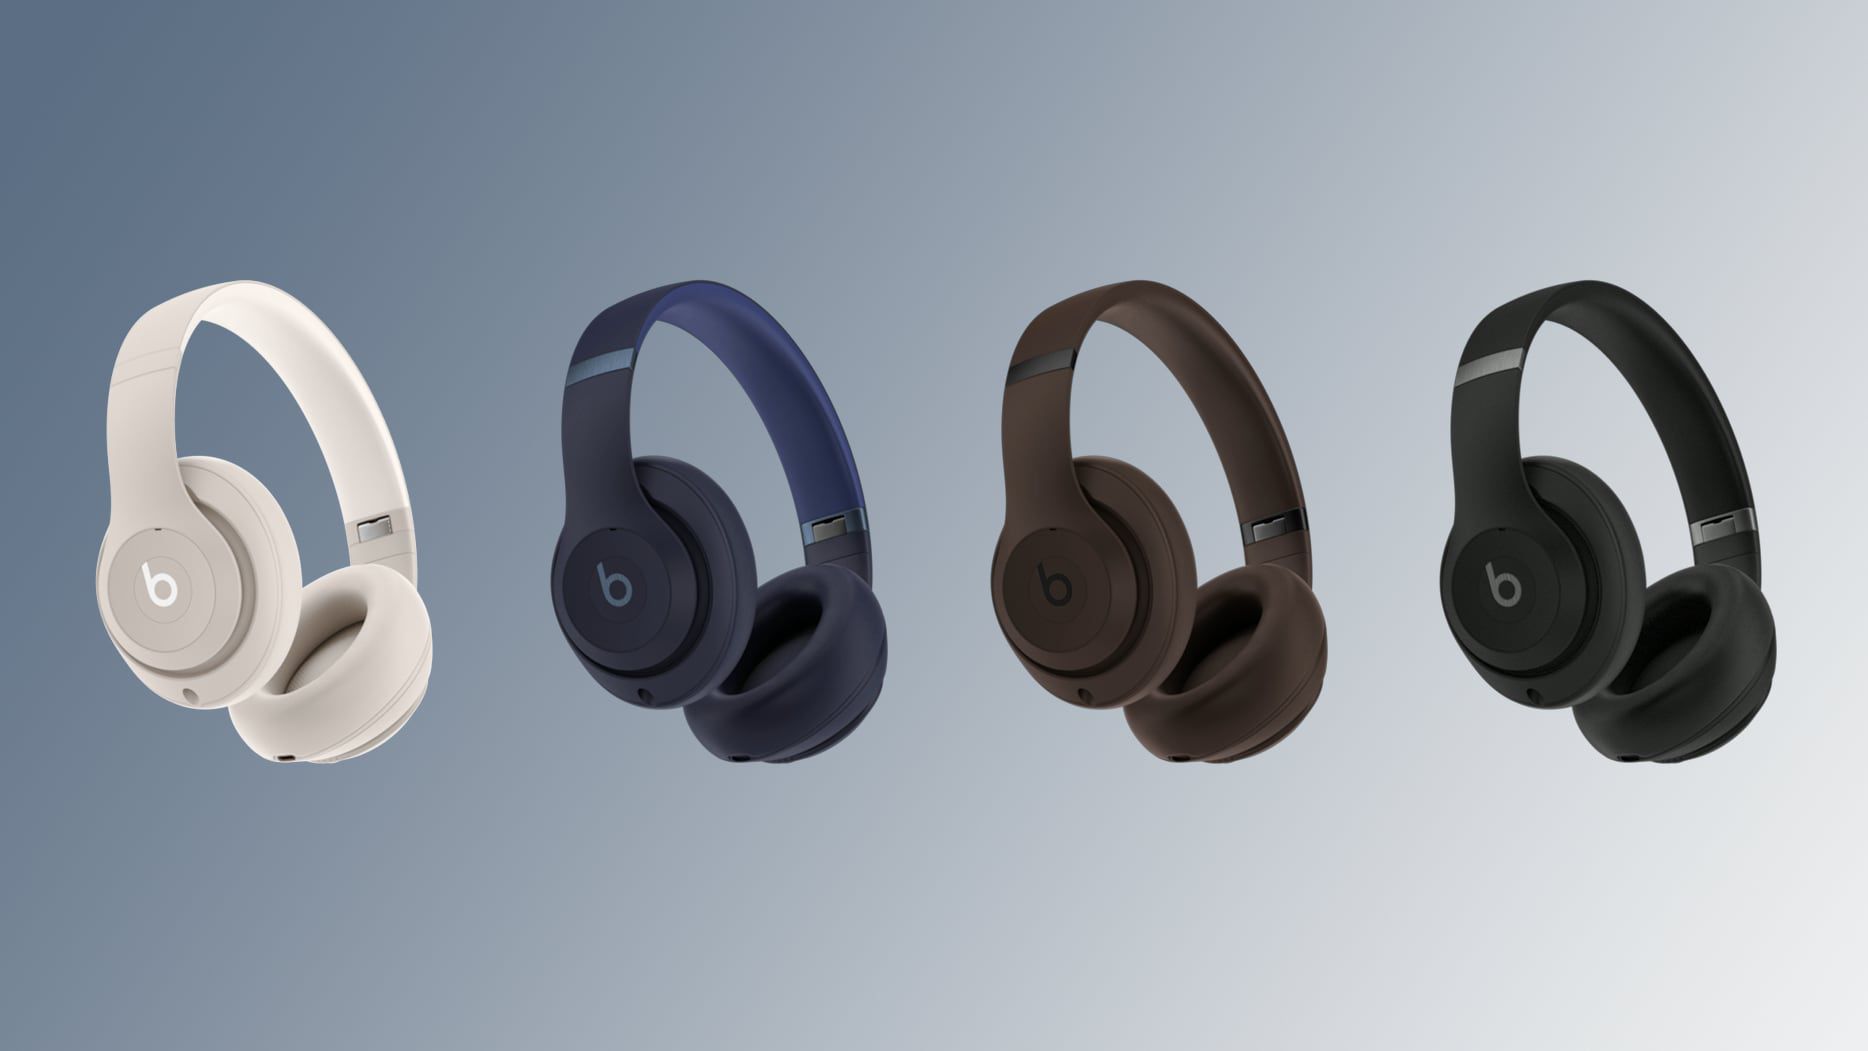 Se espera que el nuevo Beats Studio Pro de Apple se lance en julio con USB-C, sonido mejorado y más